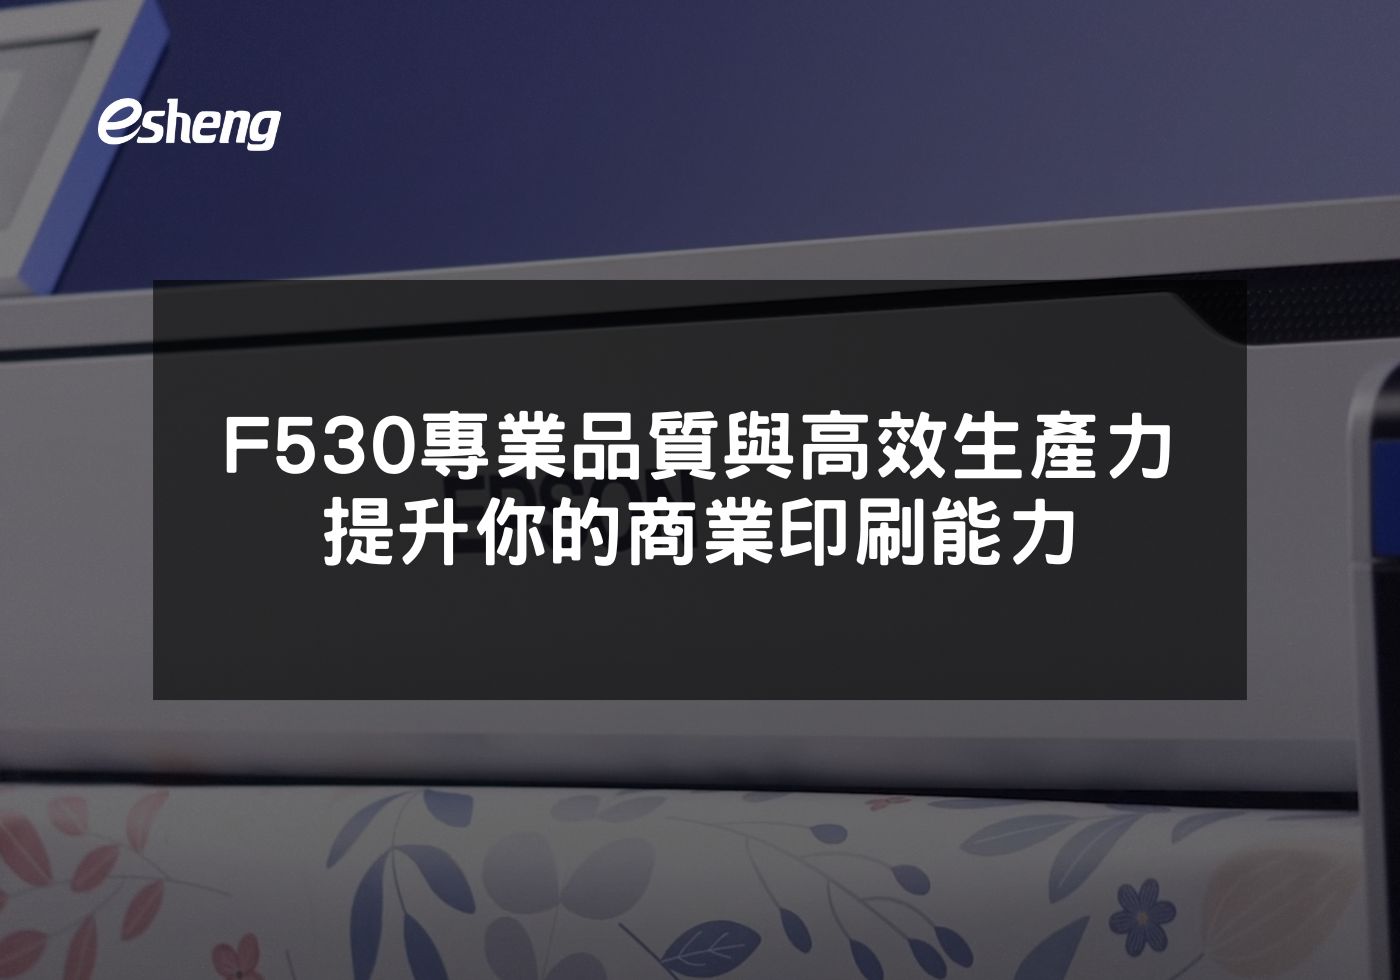 EPSON F530熱昇華印表機提升商業印刷效率